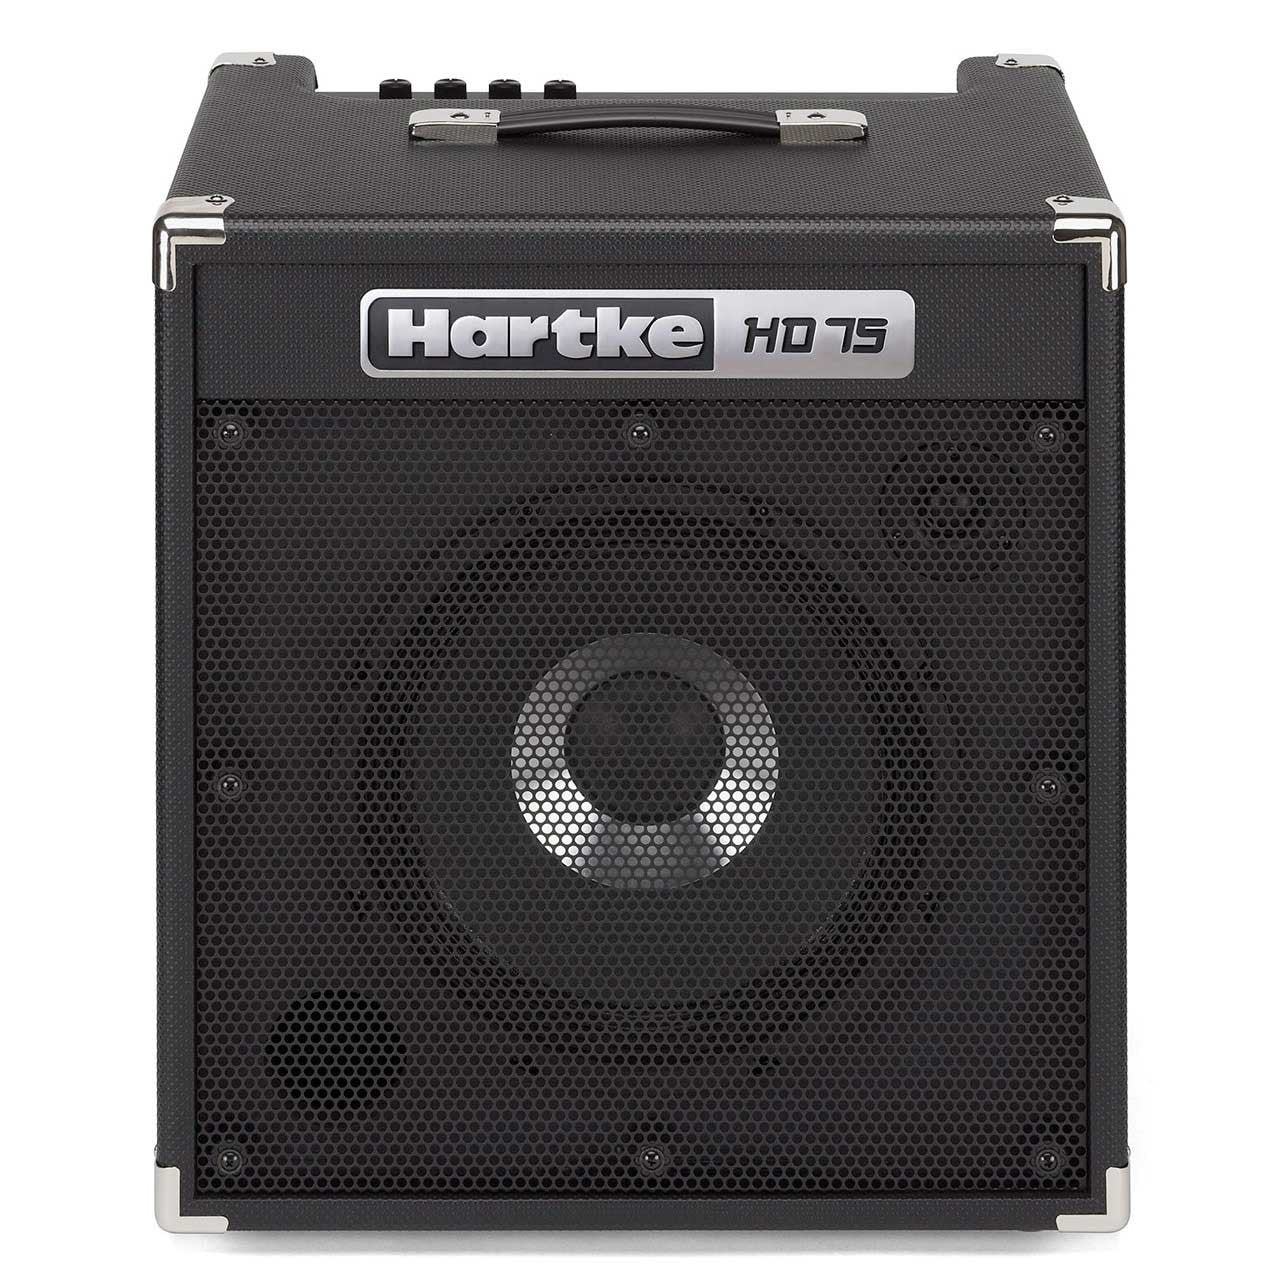 HARTKE HD75, HARTKE, BASS AMPLIFIER, hartke-hd75-bass-combo-amplifier, ZOSO MUSIC SDN BHD